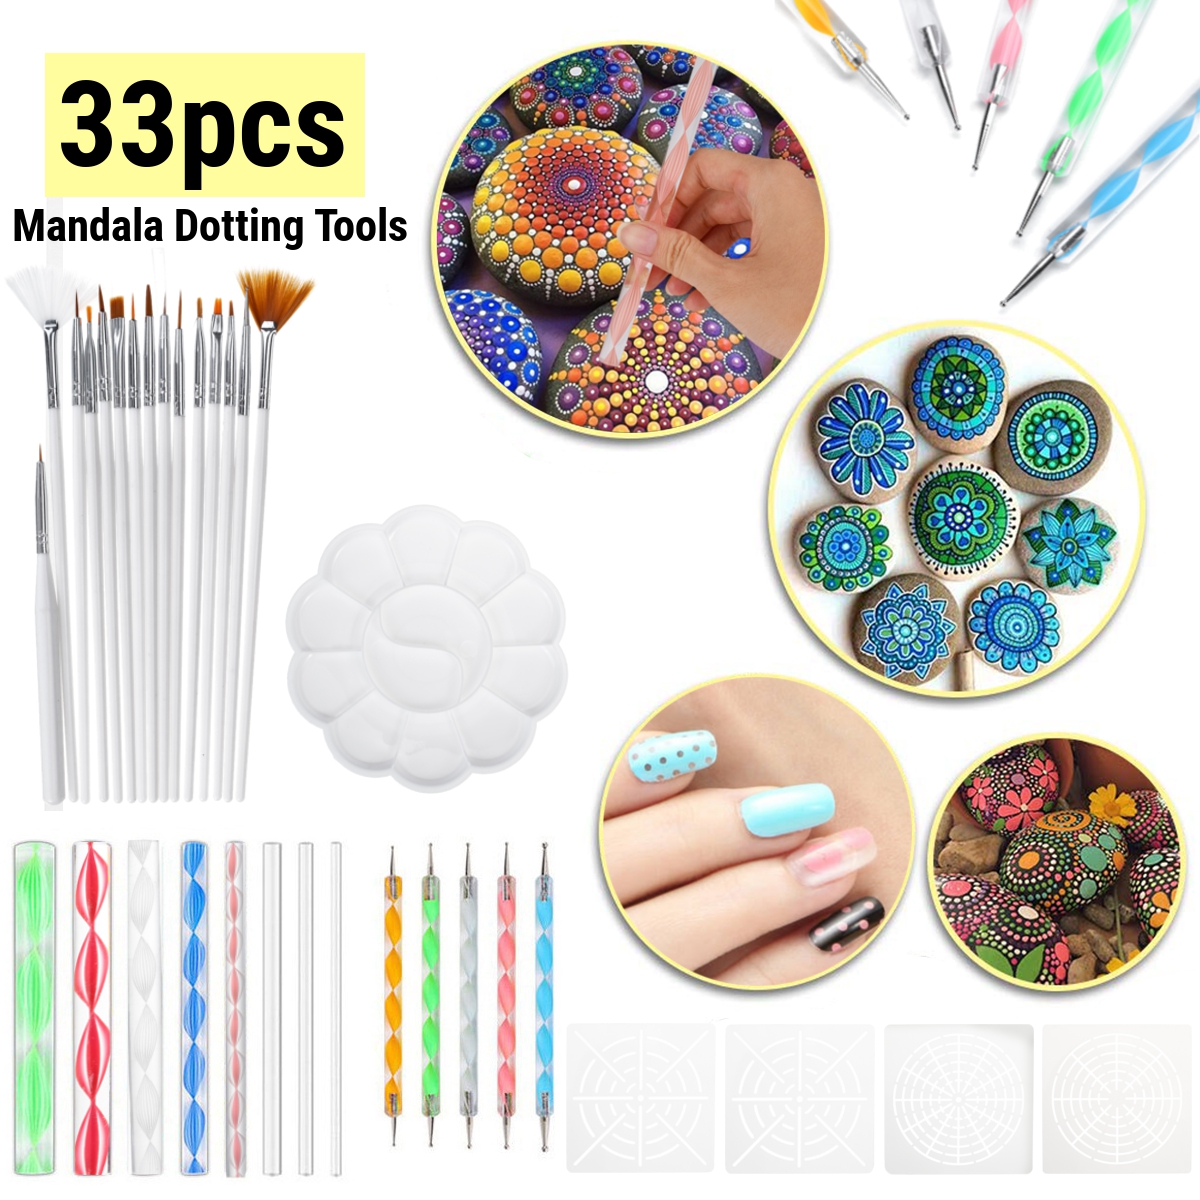 33Pcs-Mandala-Dotting-Tools-Set-Rock-Painting-Kit-Nail-Art-Pen-Paint-Stencil-1688977-1